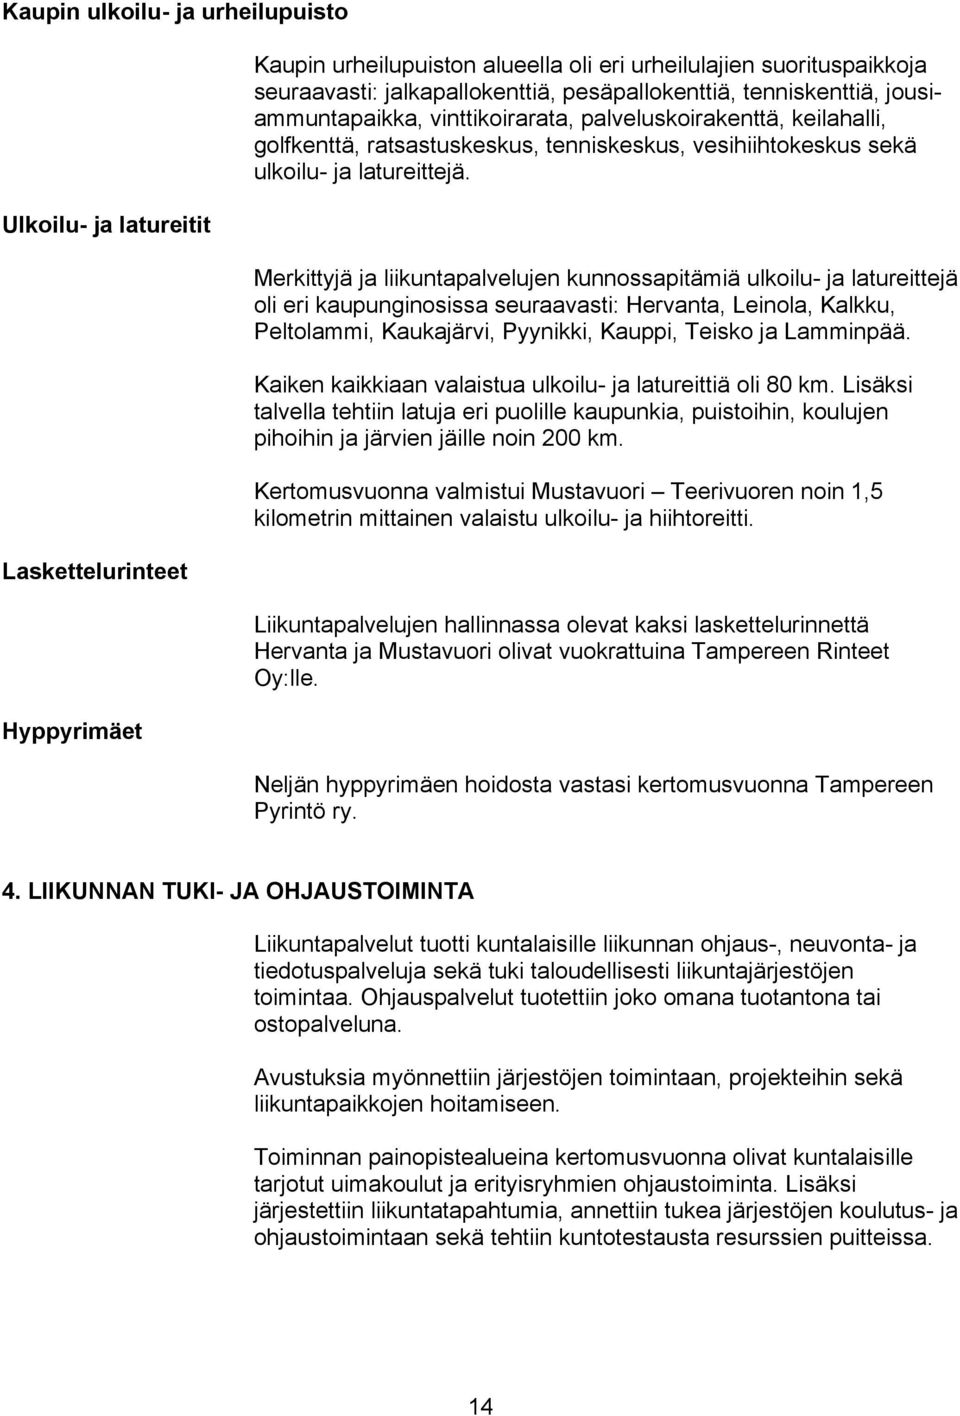 Merkittyjä ja liikuntapalvelujen kunnossapitämiä ulkoilu- ja latureittejä oli eri kaupunginosissa seuraavasti: Hervanta, Leinola, Kalkku, Peltolammi, Kaukajärvi, Pyynikki, Kauppi, Teisko ja Lamminpää.